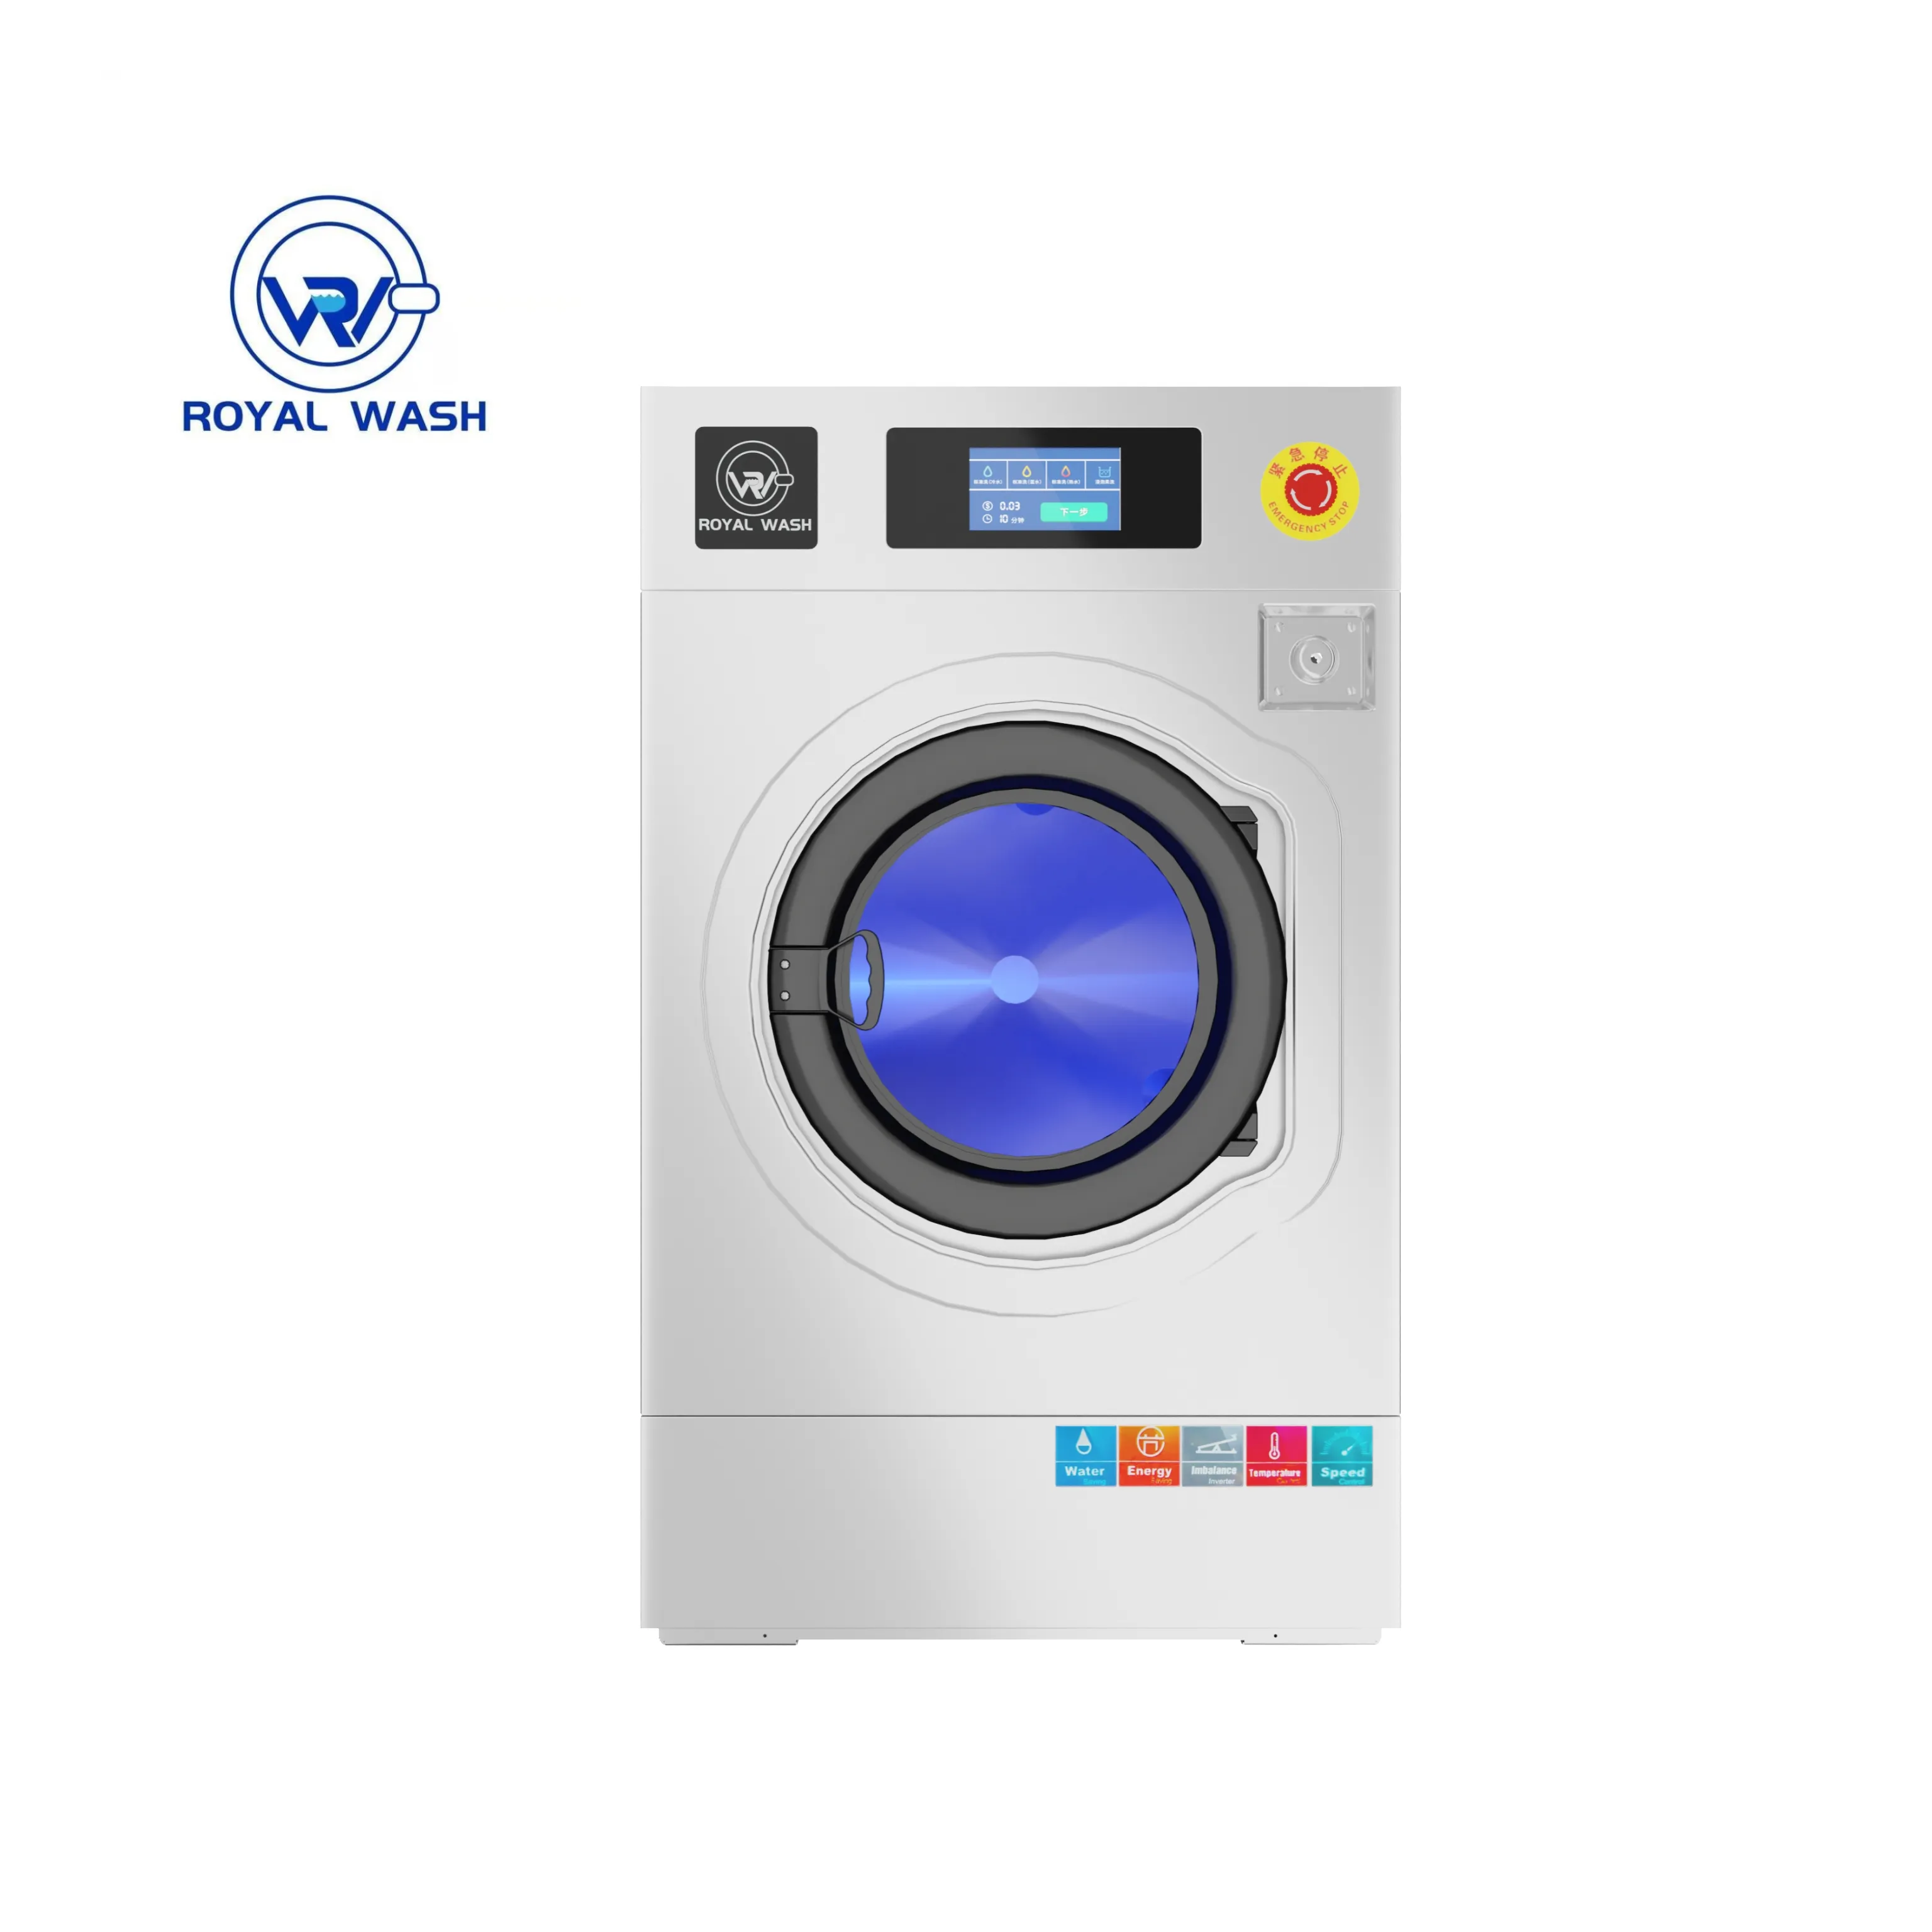 セルフサービスタイプ洗濯機抽出ソフトマウント商業洗濯機メーカー工業用洗濯機工場価格